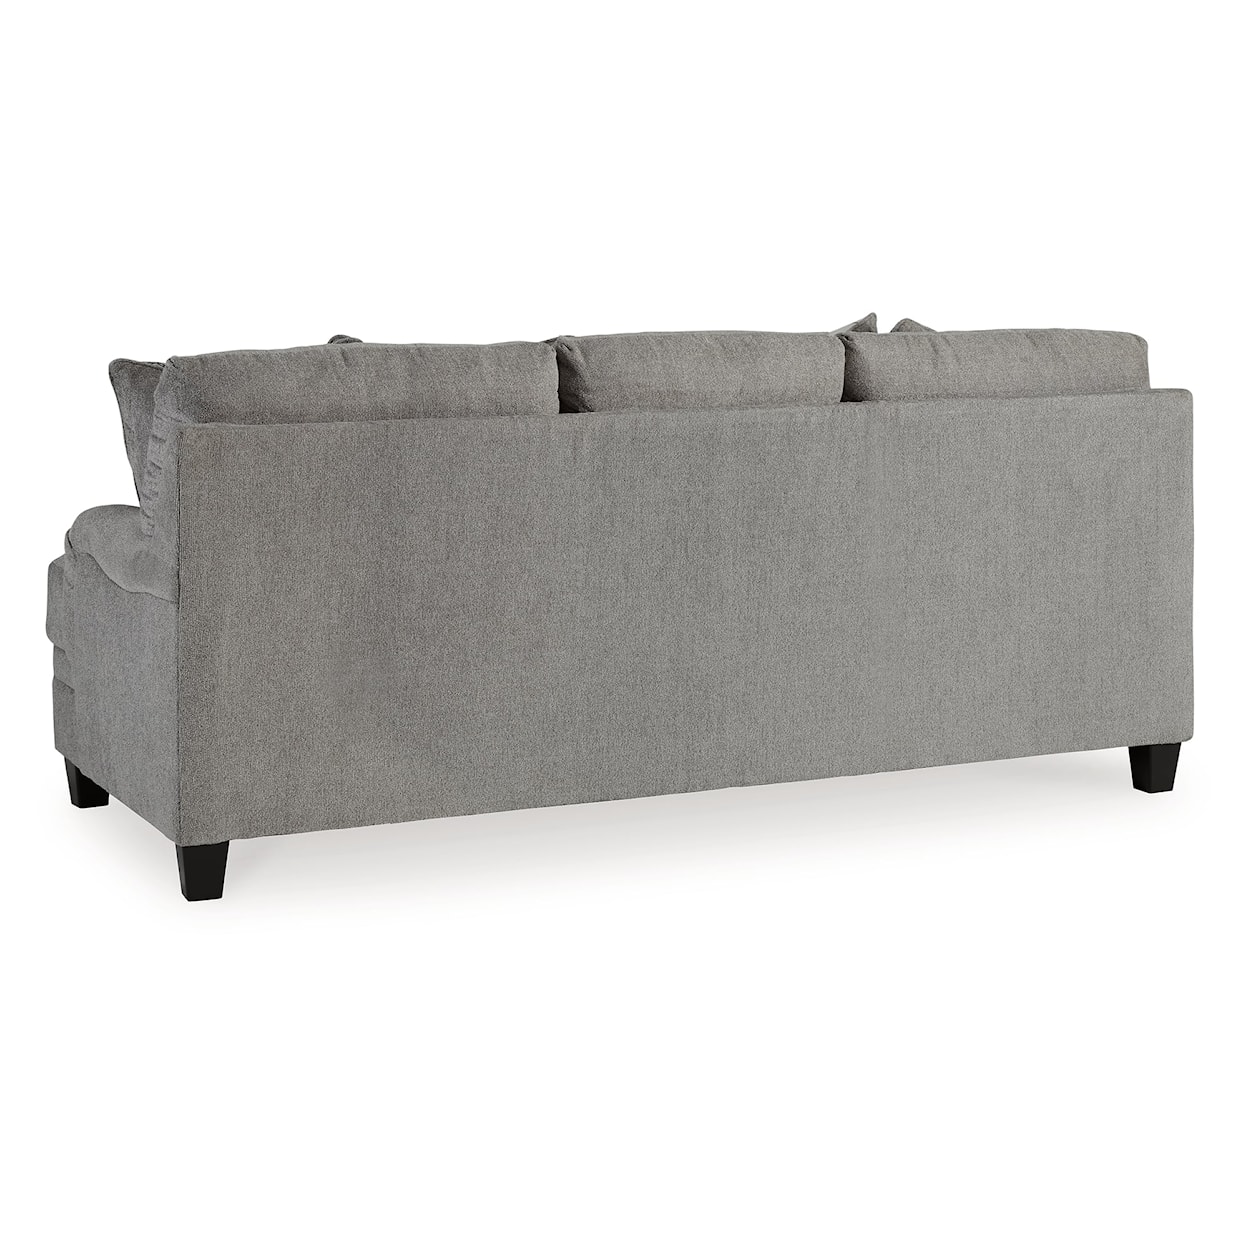 Ashley Furniture Benchcraft Davinca Sofa